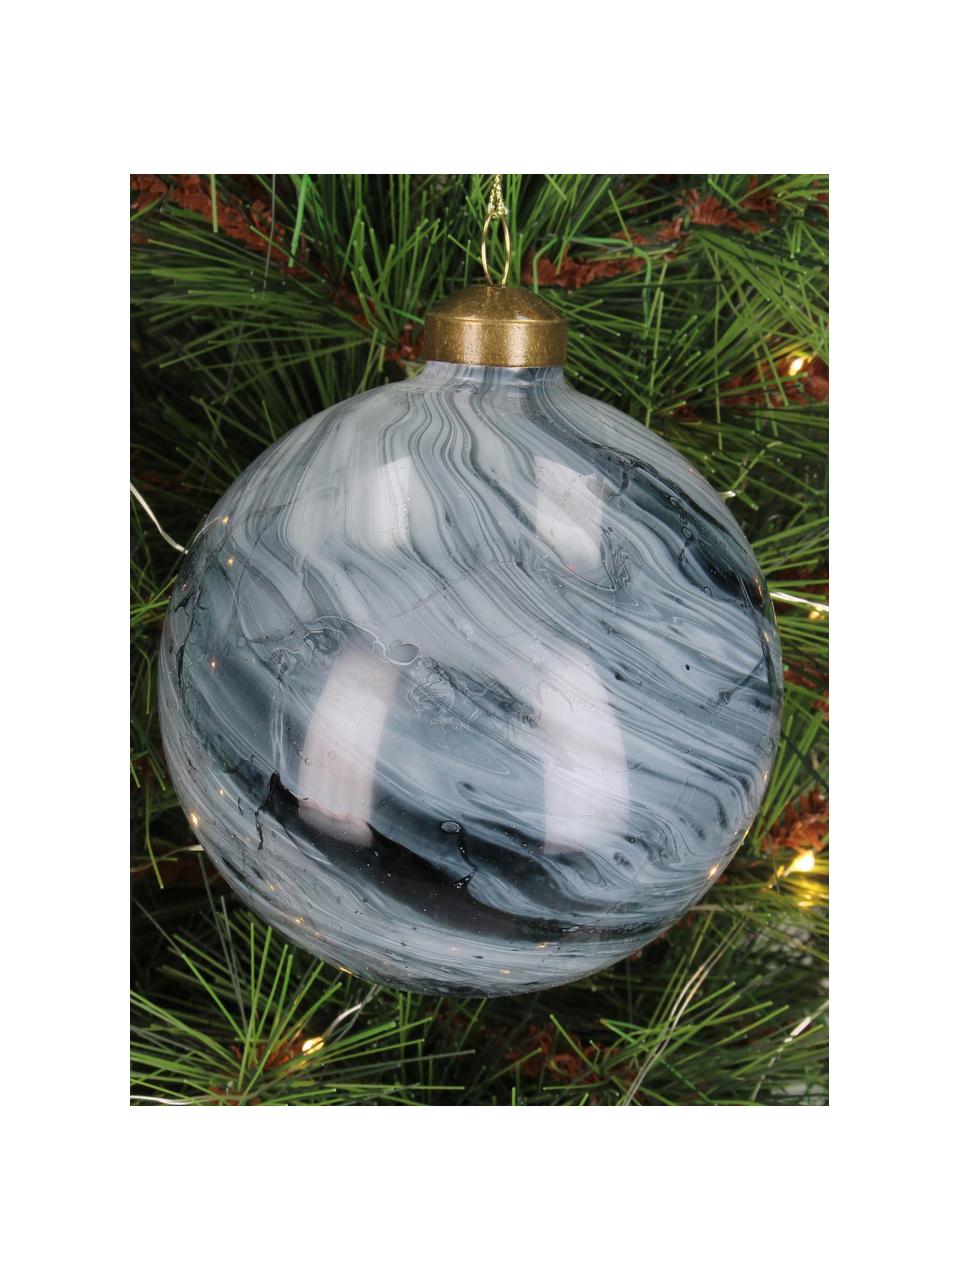 Kerstballen Marble met marmerlook, 6 stuks, Glas, Grijs, wit, marmerlook, Ø 10 cm